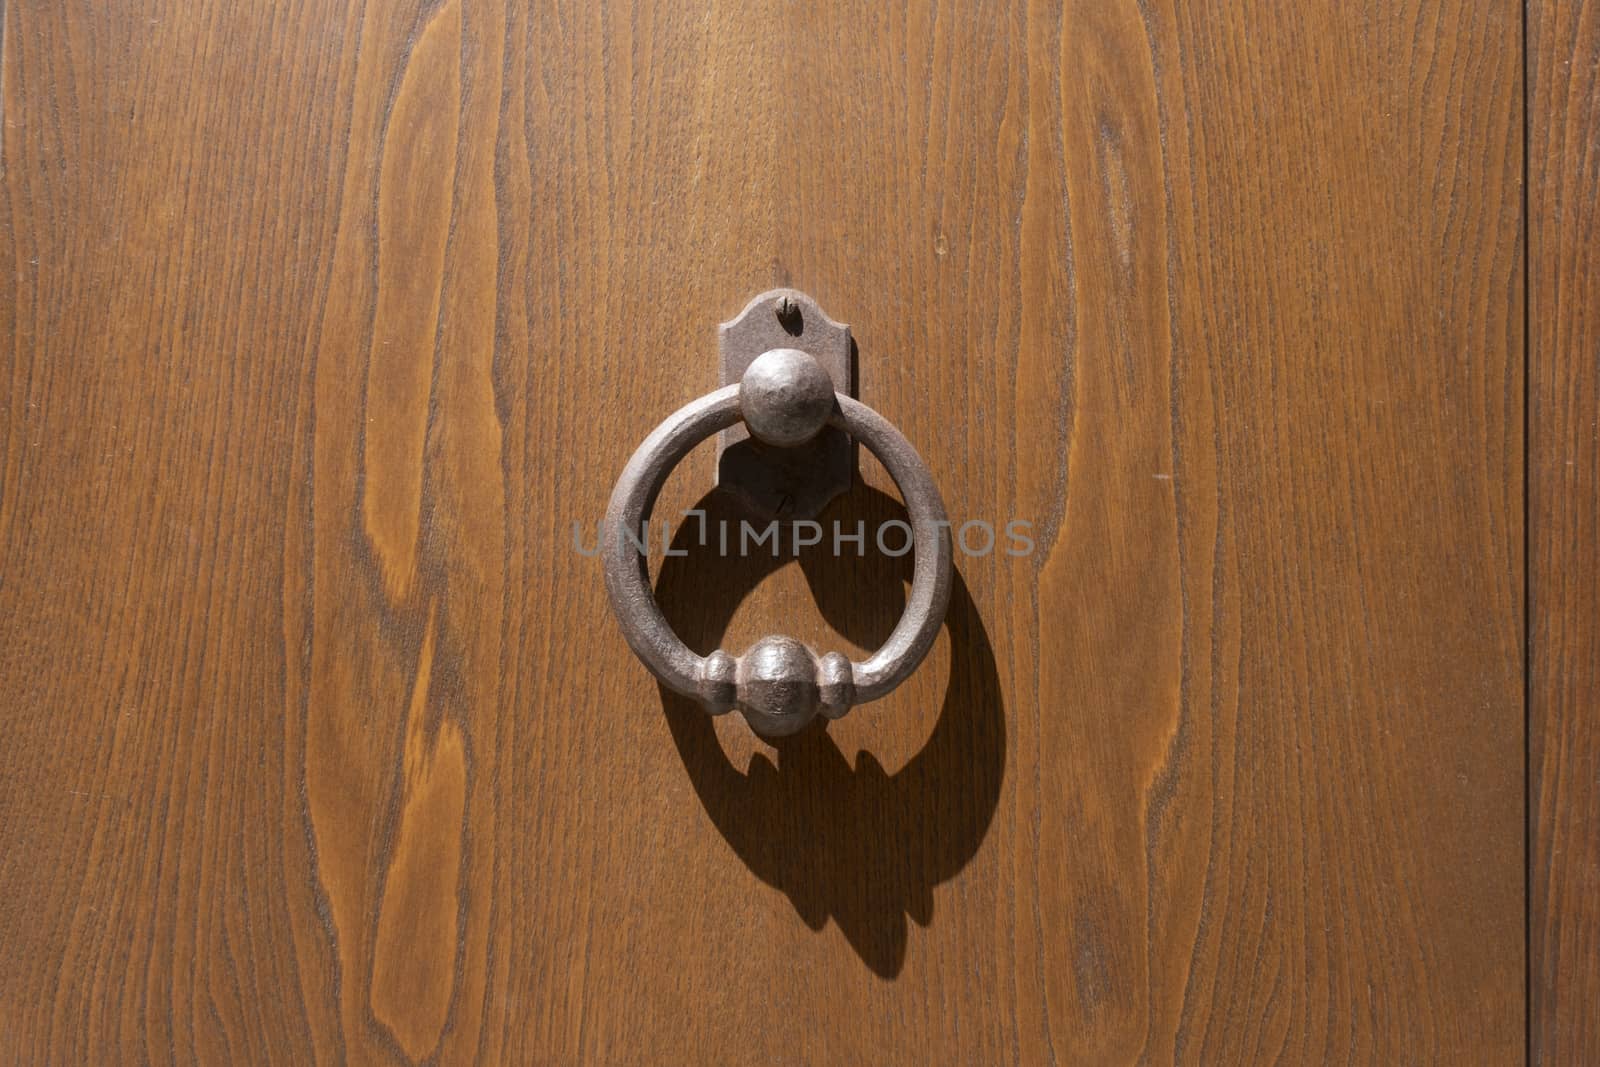 Royal style antique doorknocker on a wooden door